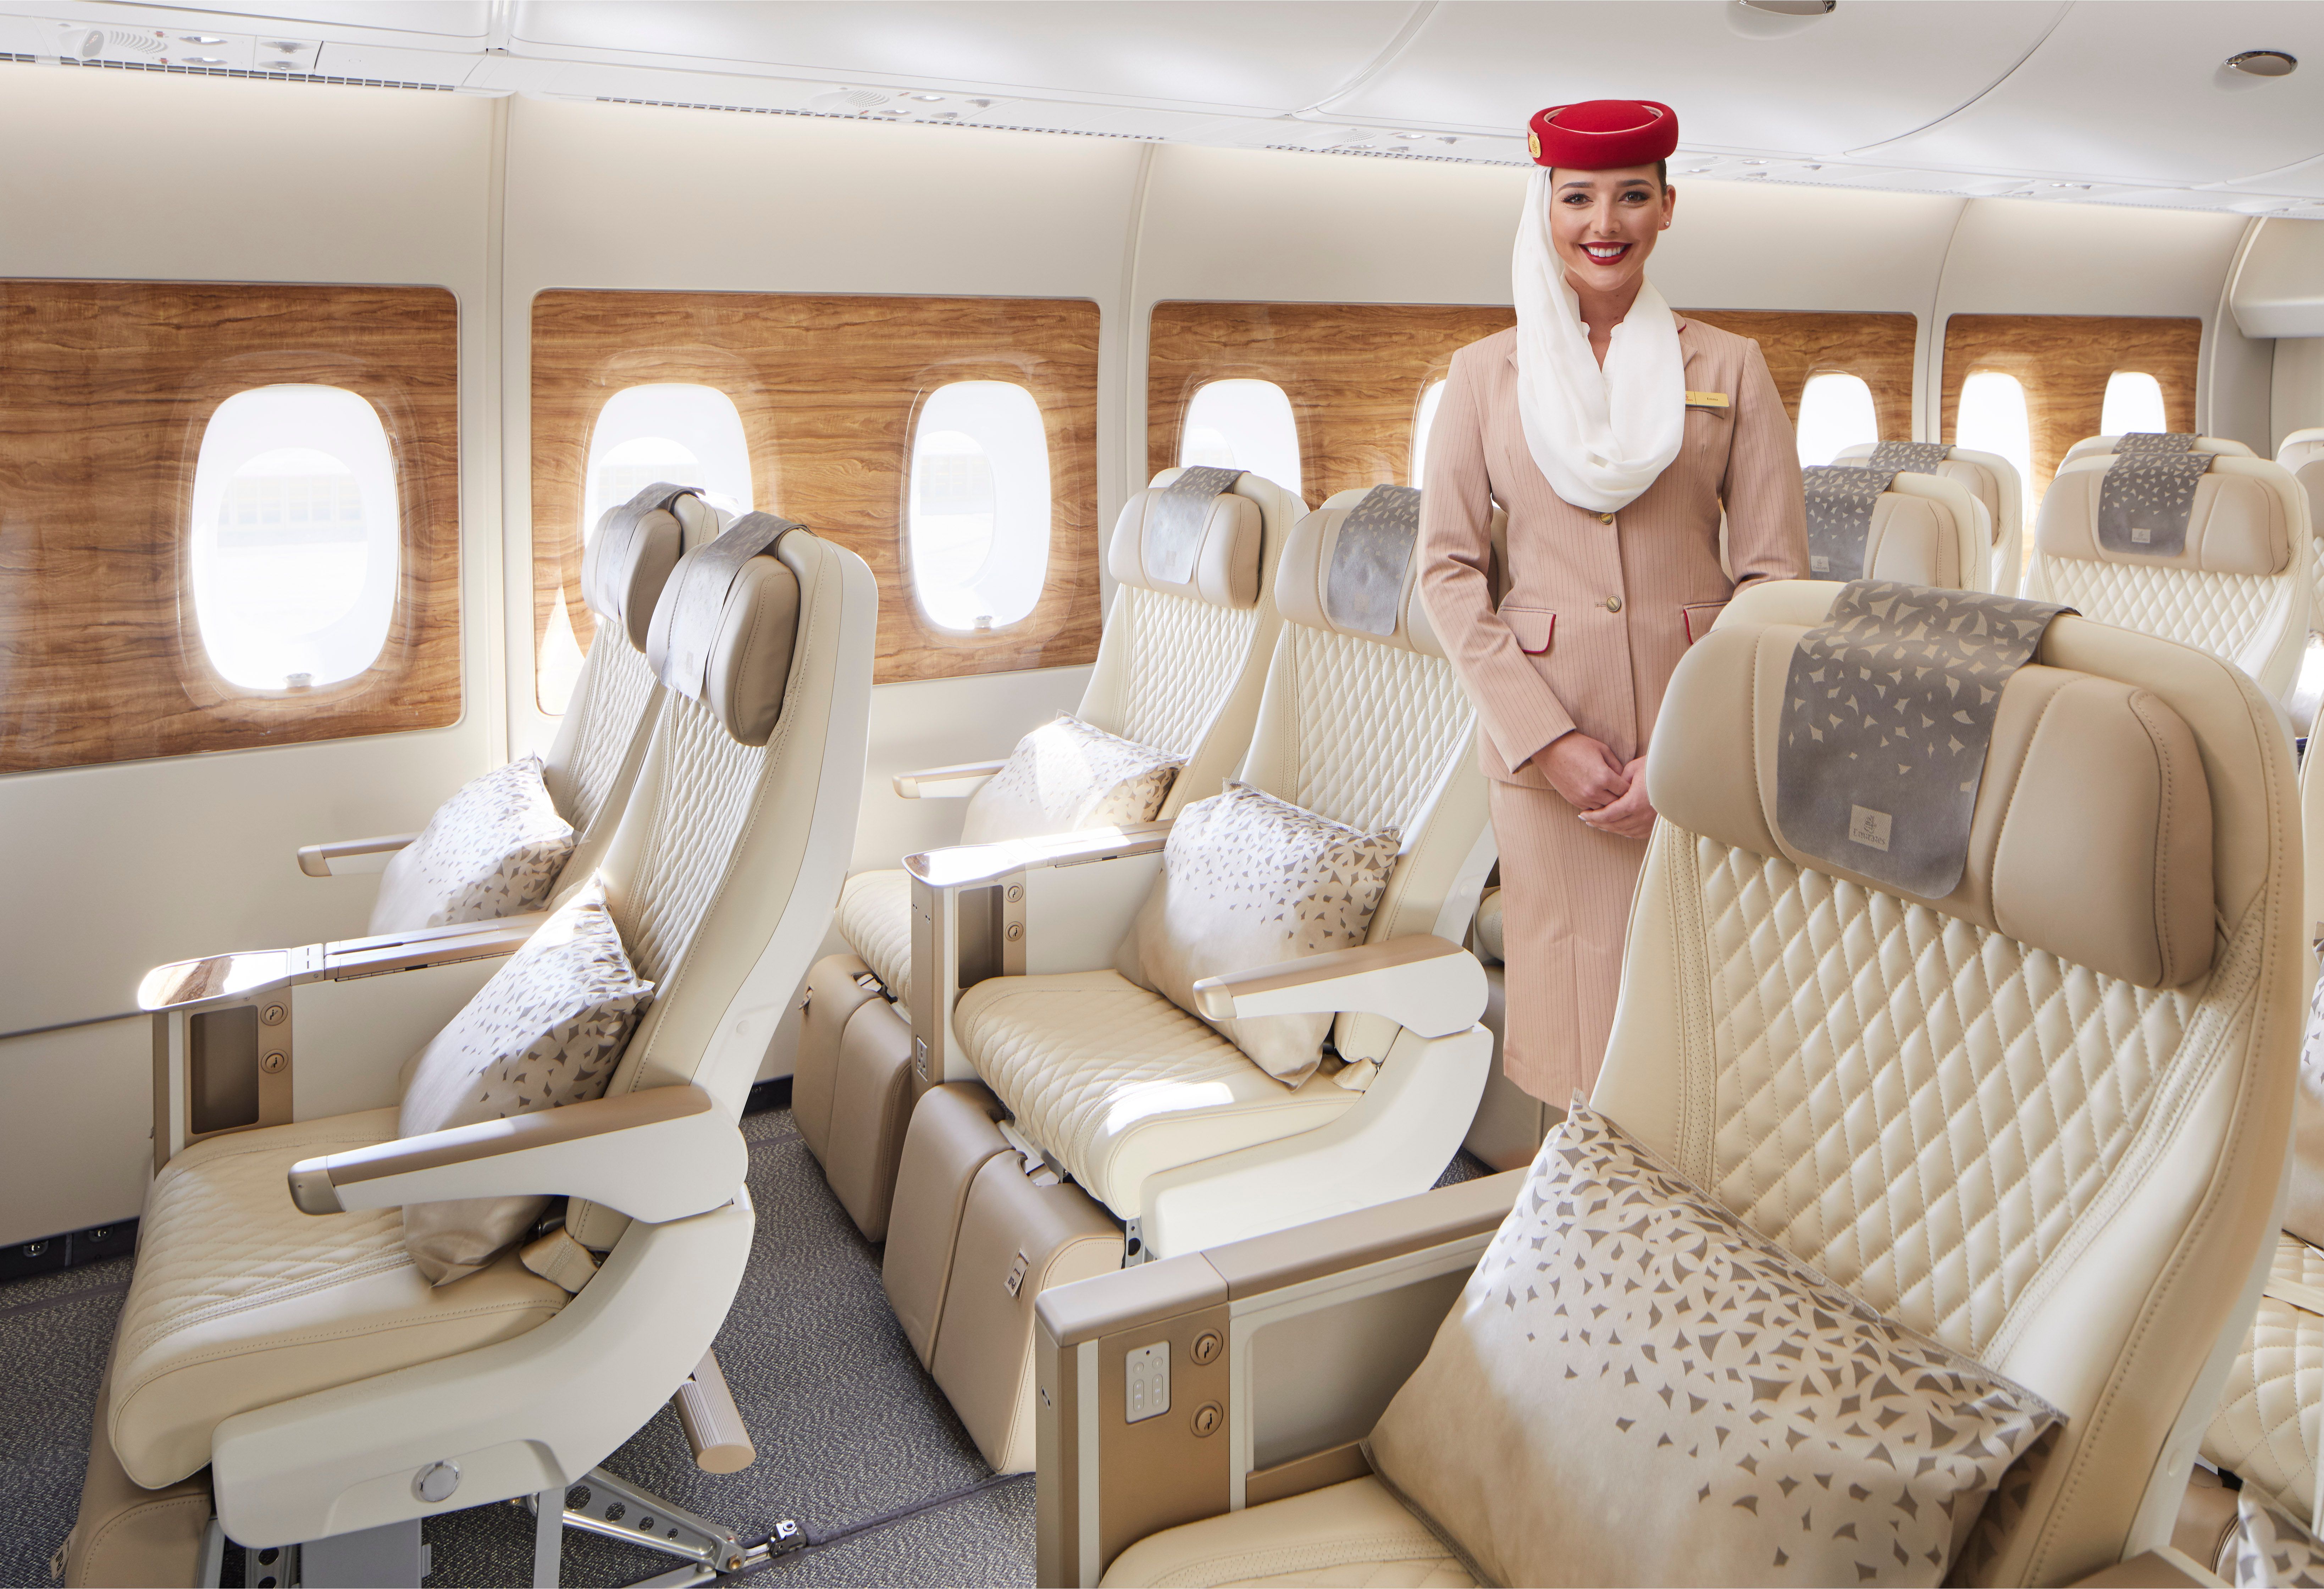 Emirates' New Premium Economy Seat with Crew